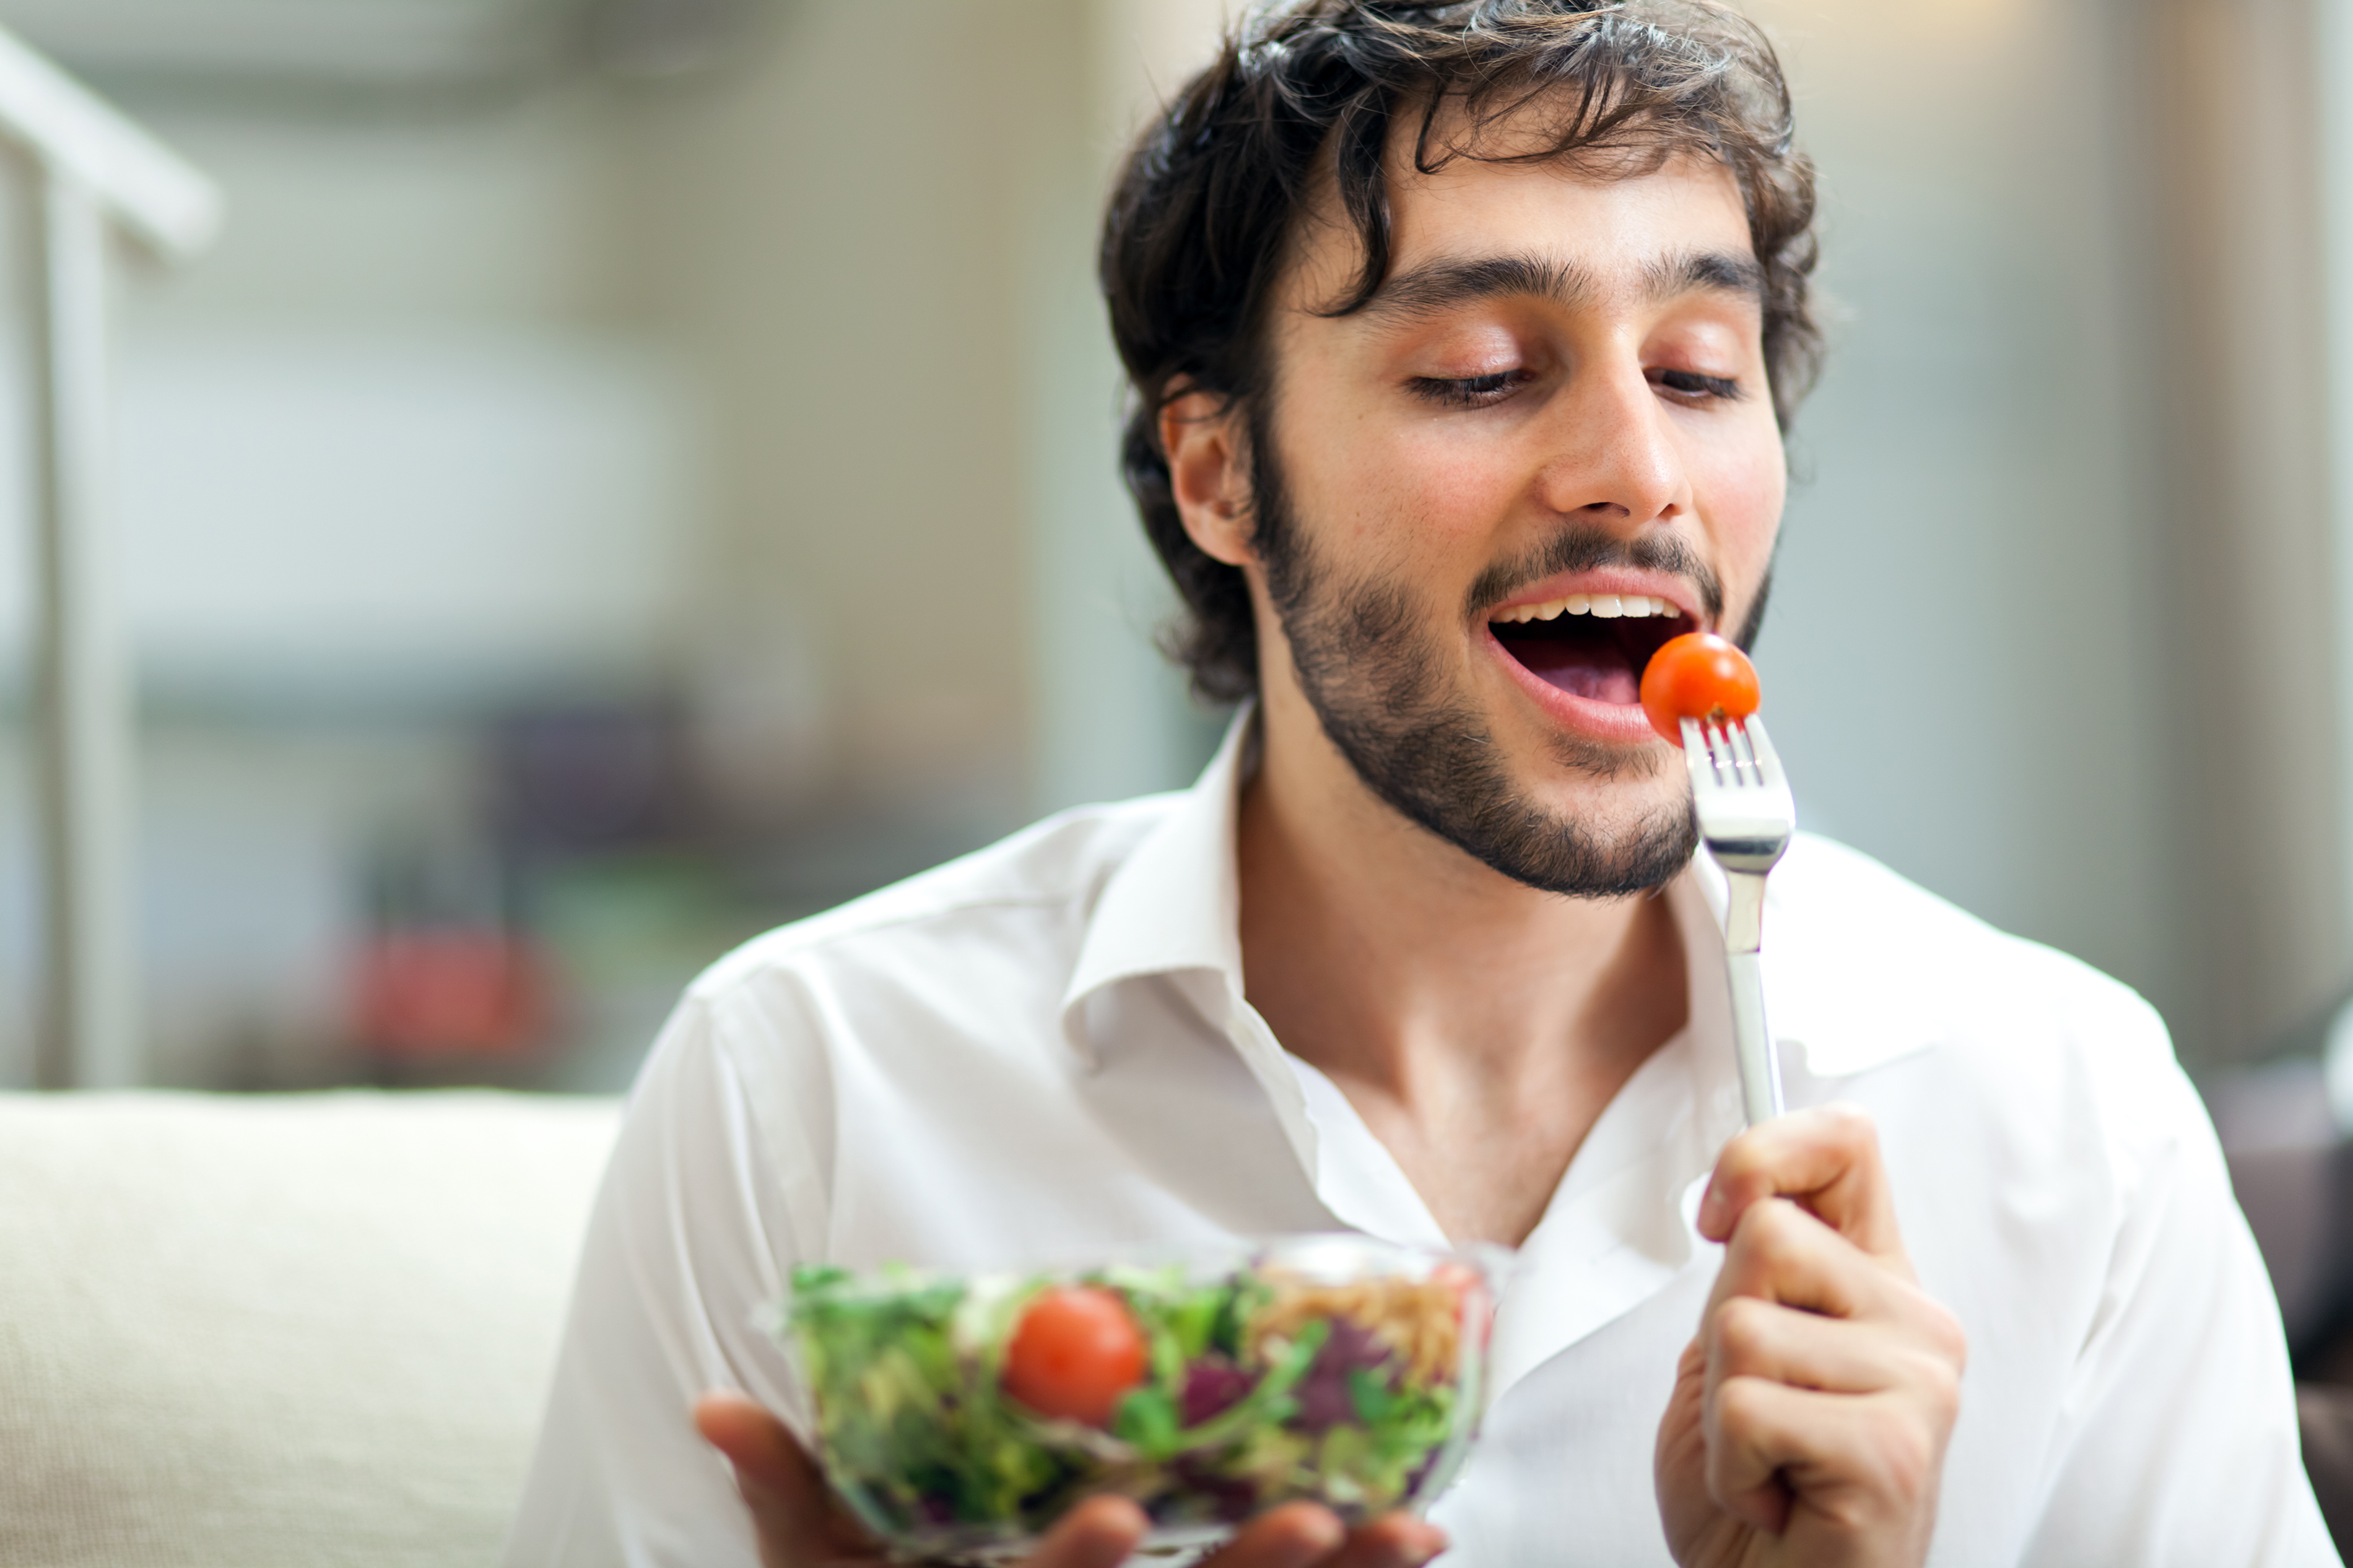 Hasil gambar untuk man eating healthy food